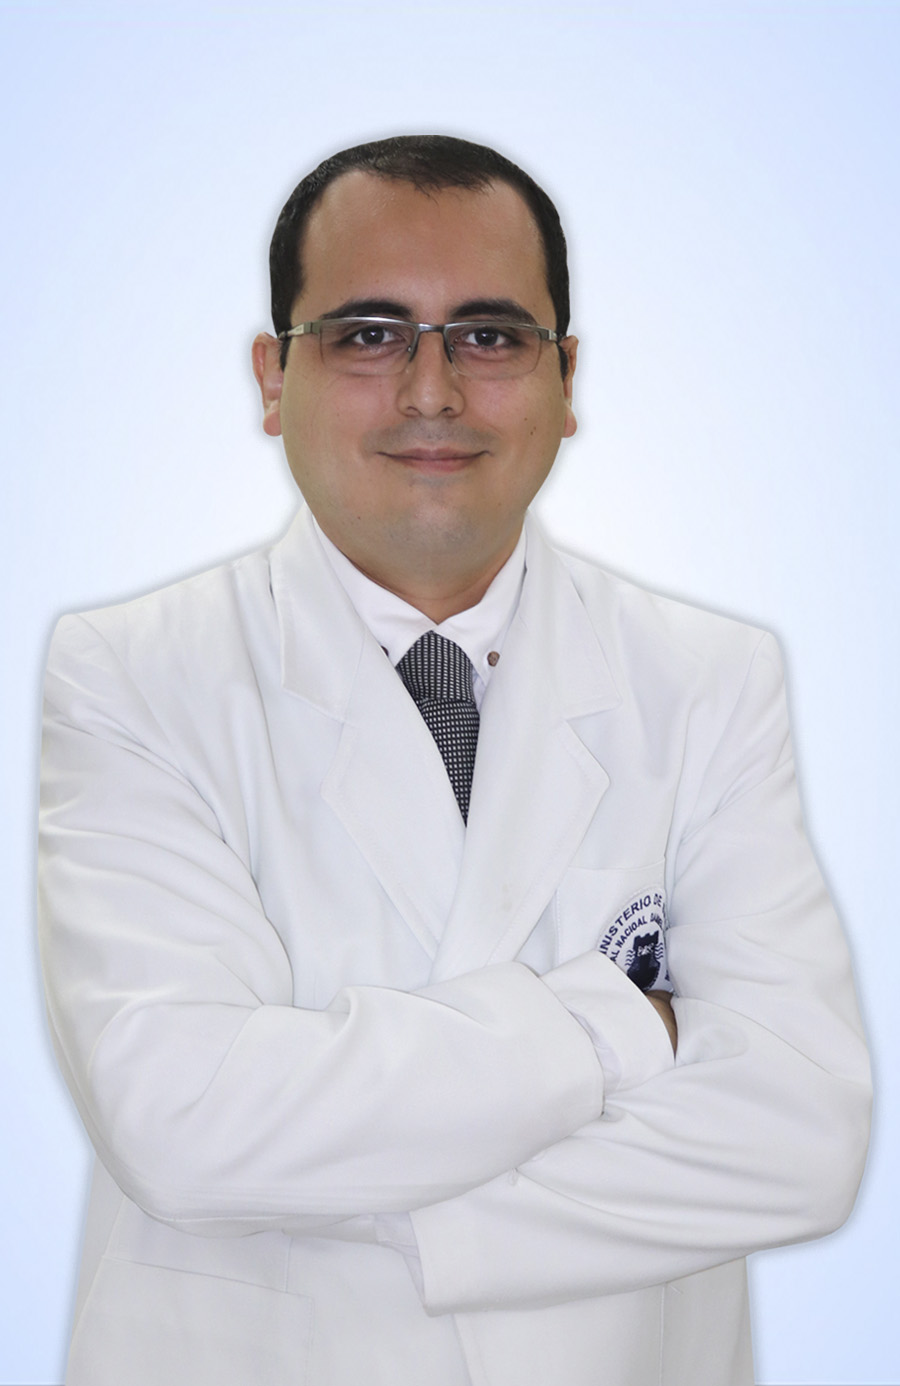 DR. CABRERA